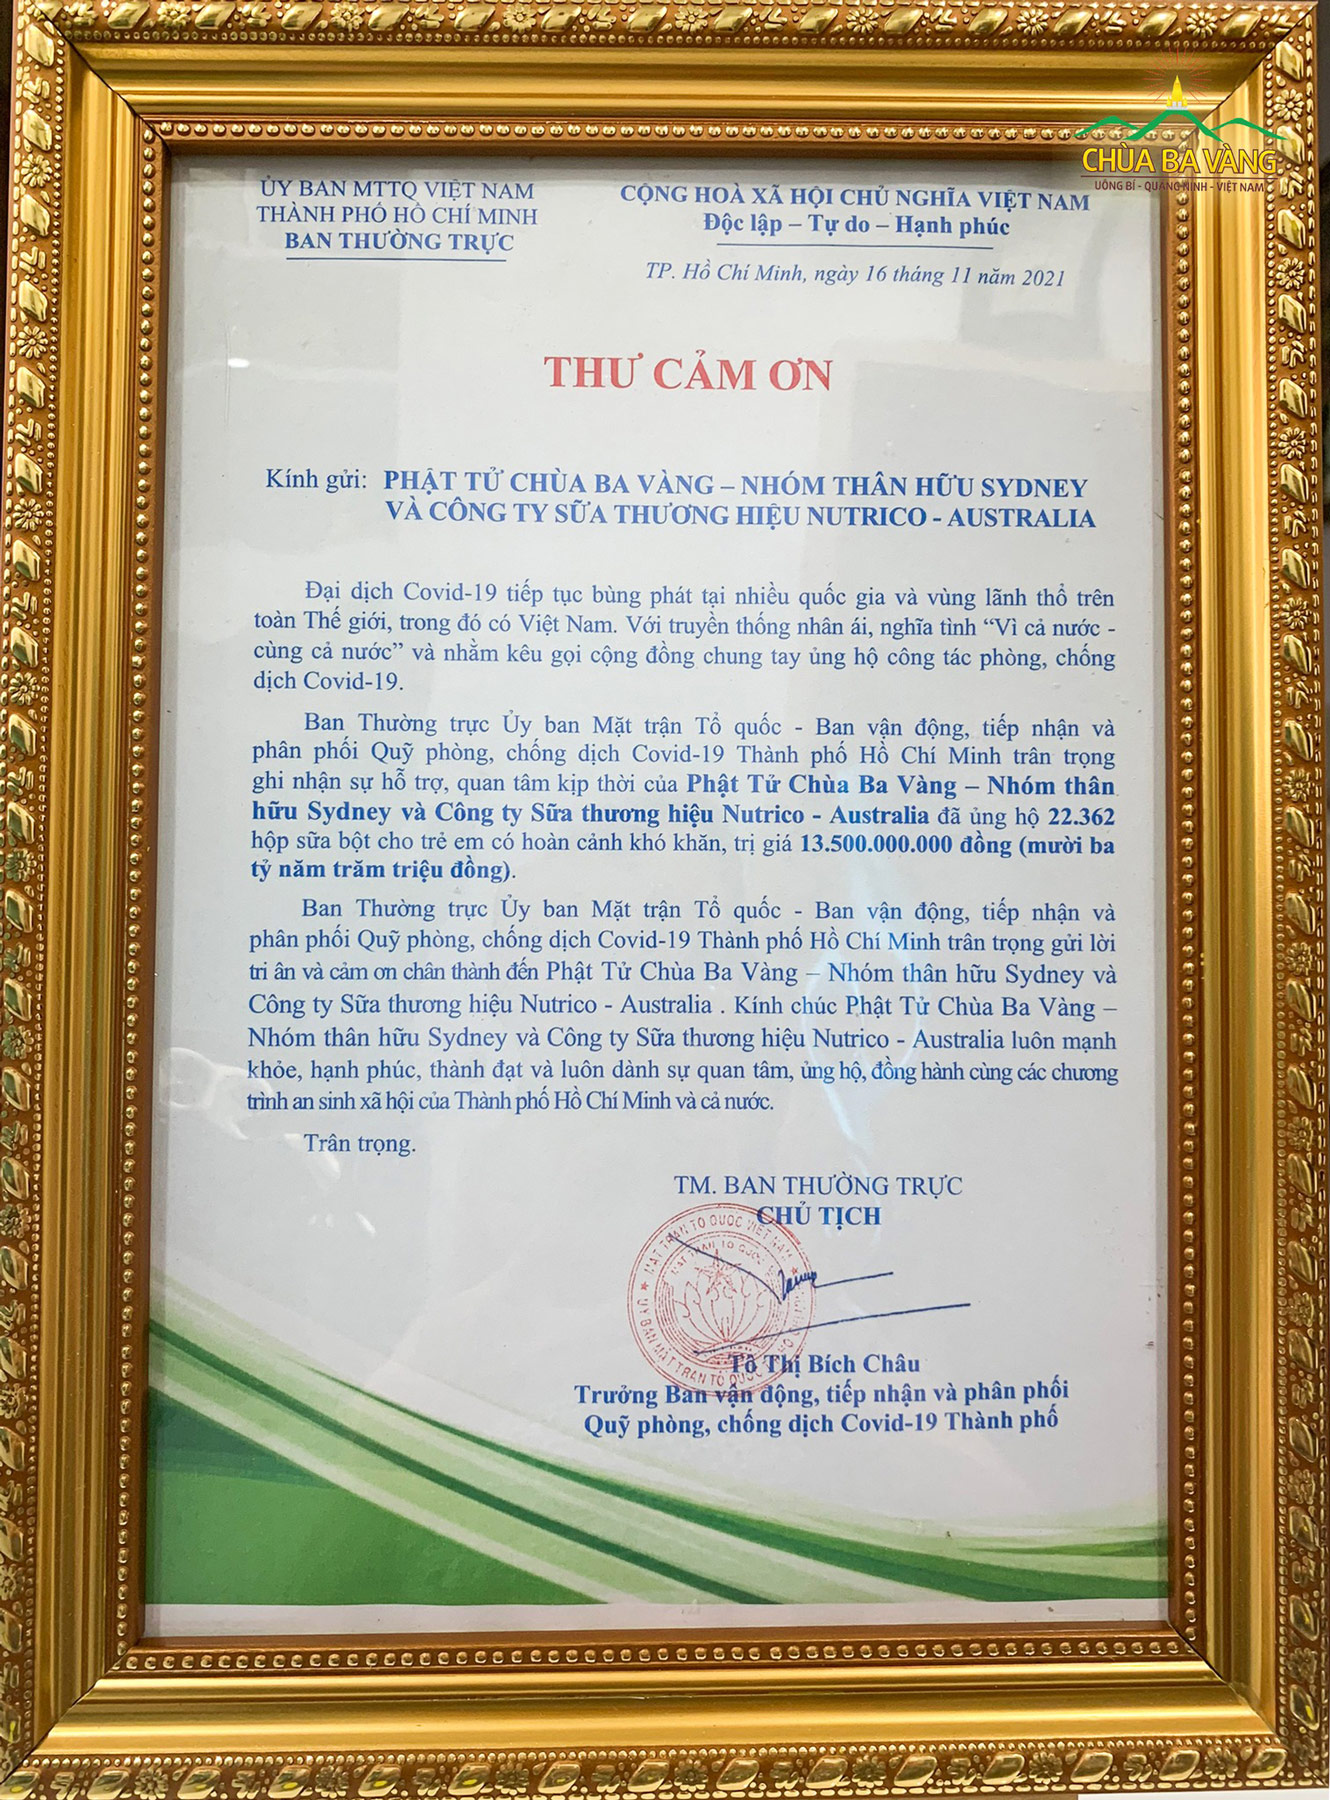 Ủy ban MTTQVN TP. Hồ Chí Minh gửi thư cảm ơn đến Phật tử chùa Ba Vàng - nhóm thân hữu Sydney và Công ty sữa thương hiệu Nutrico - Australia